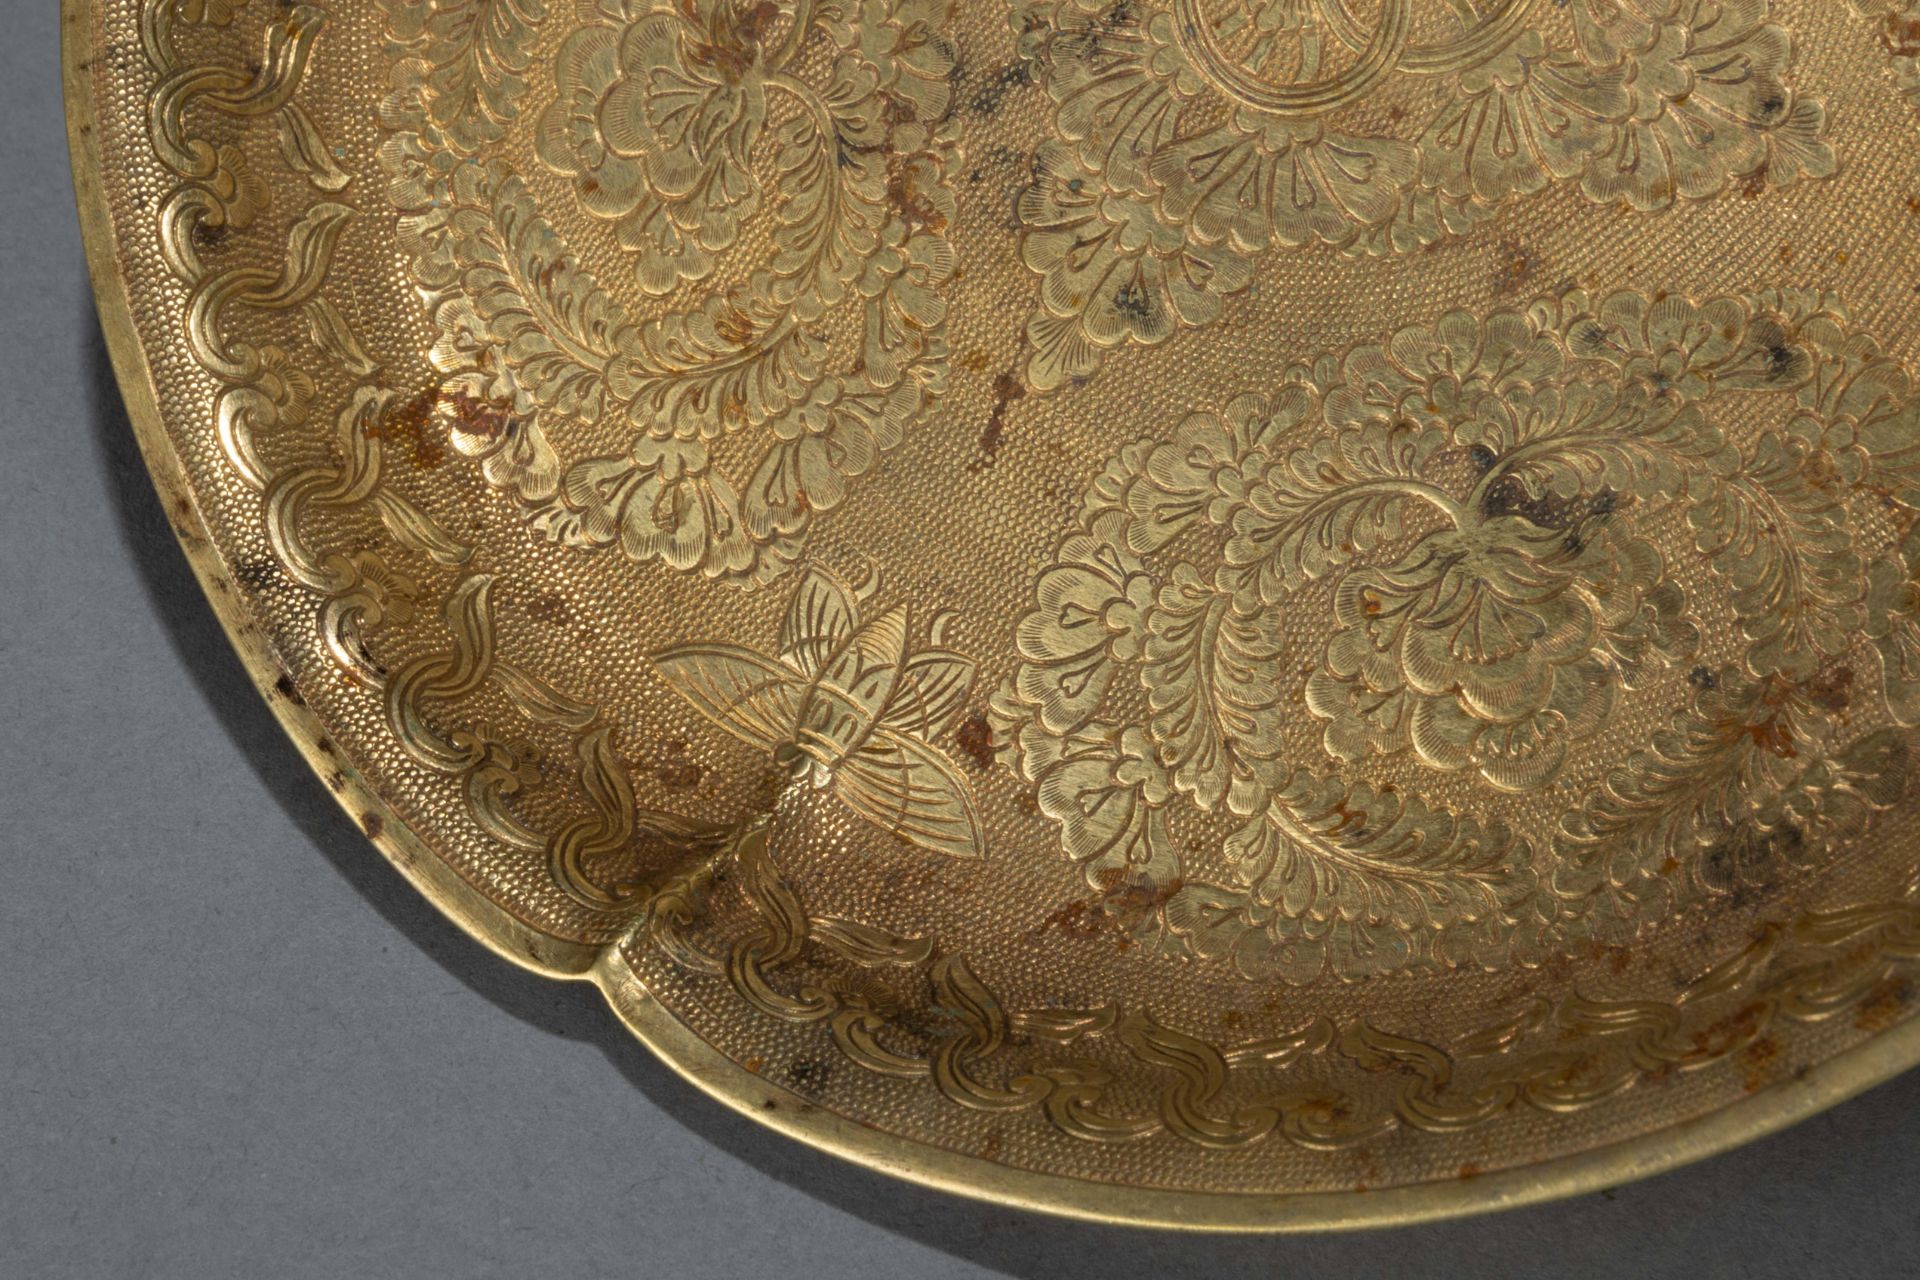 Coupelle plate à marli incurvé, finement ciselée de motifs floraux et cercles concentriques centraux - Bild 5 aus 8